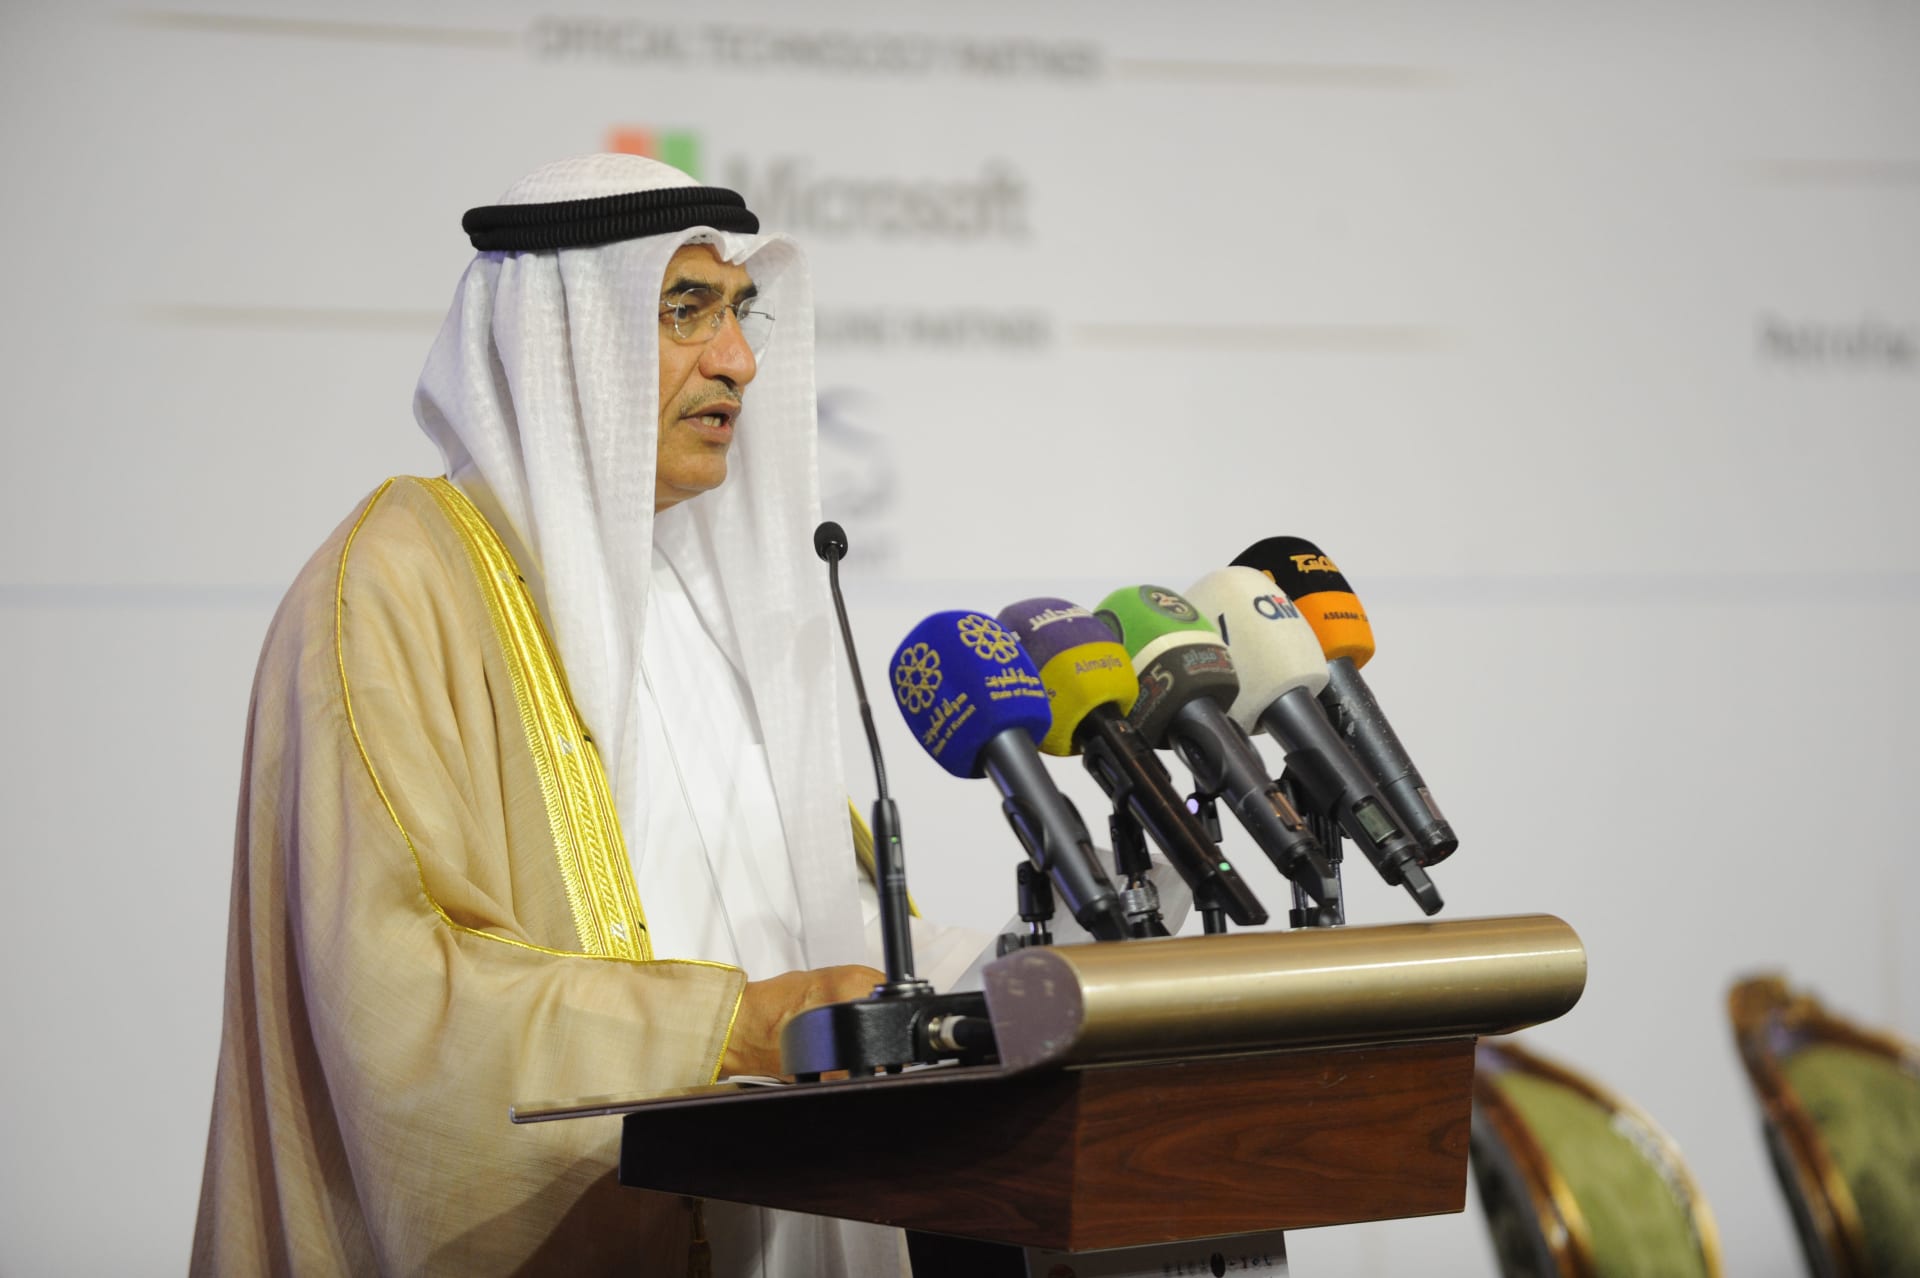 الكويت تصدر النفط الخفيف لأول مرة في تاريخها..وخبير يعلق لـCNN